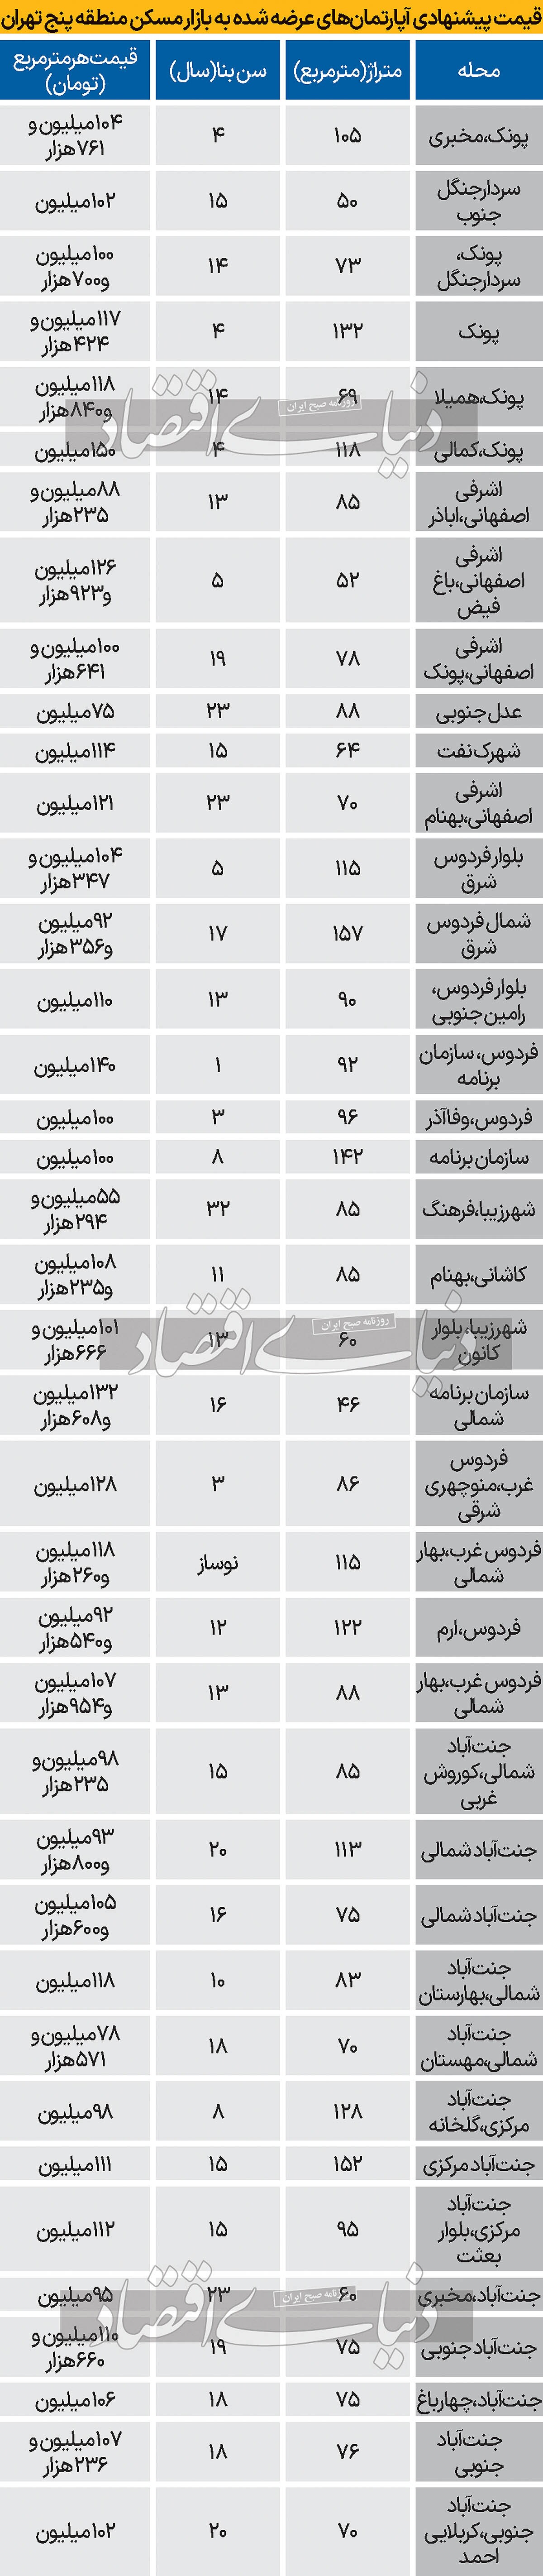 قیمت پیشنهادی آپارتمان در منطقه ۵ تهران/ جدول